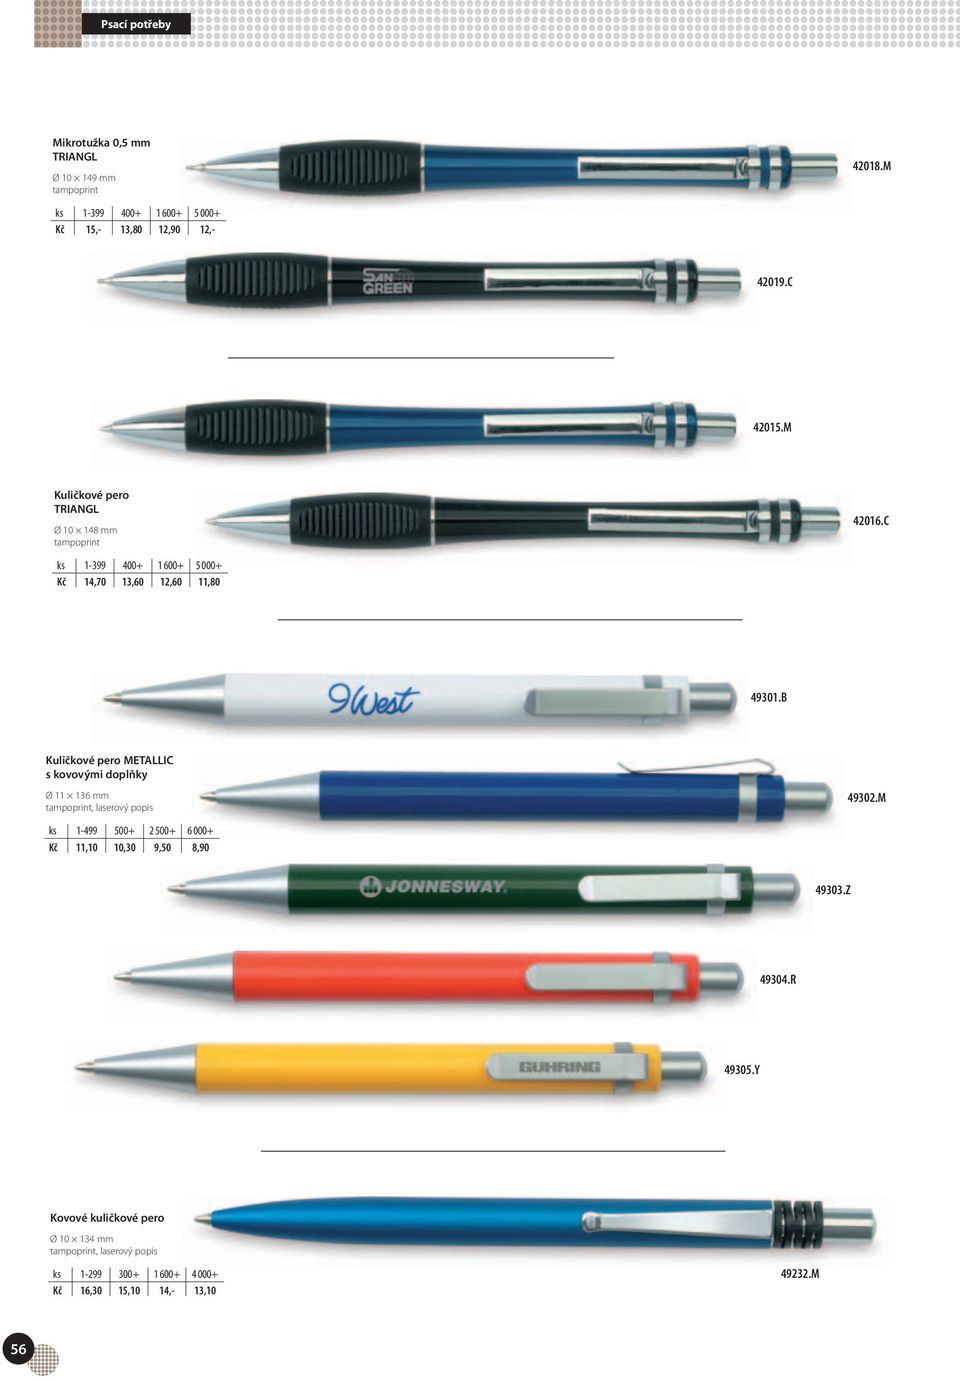 B Kuličkové pero METALLIC s kovovými doplňky Ø 11 136 mm 49302.